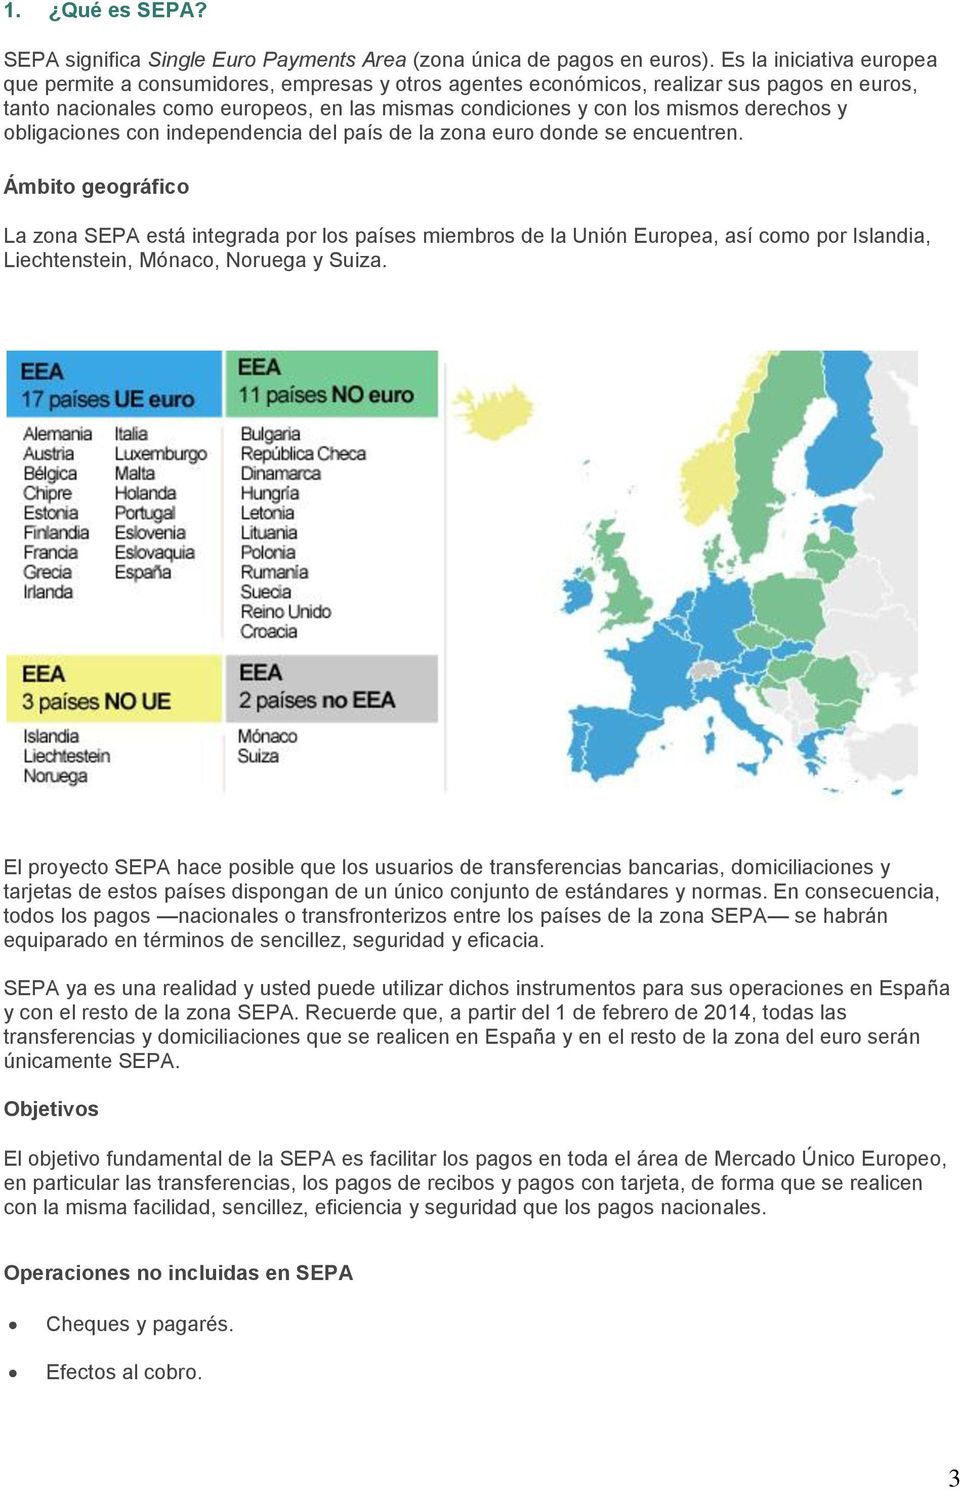 derechos y obligaciones con independencia del país de la zona euro donde se encuentren.